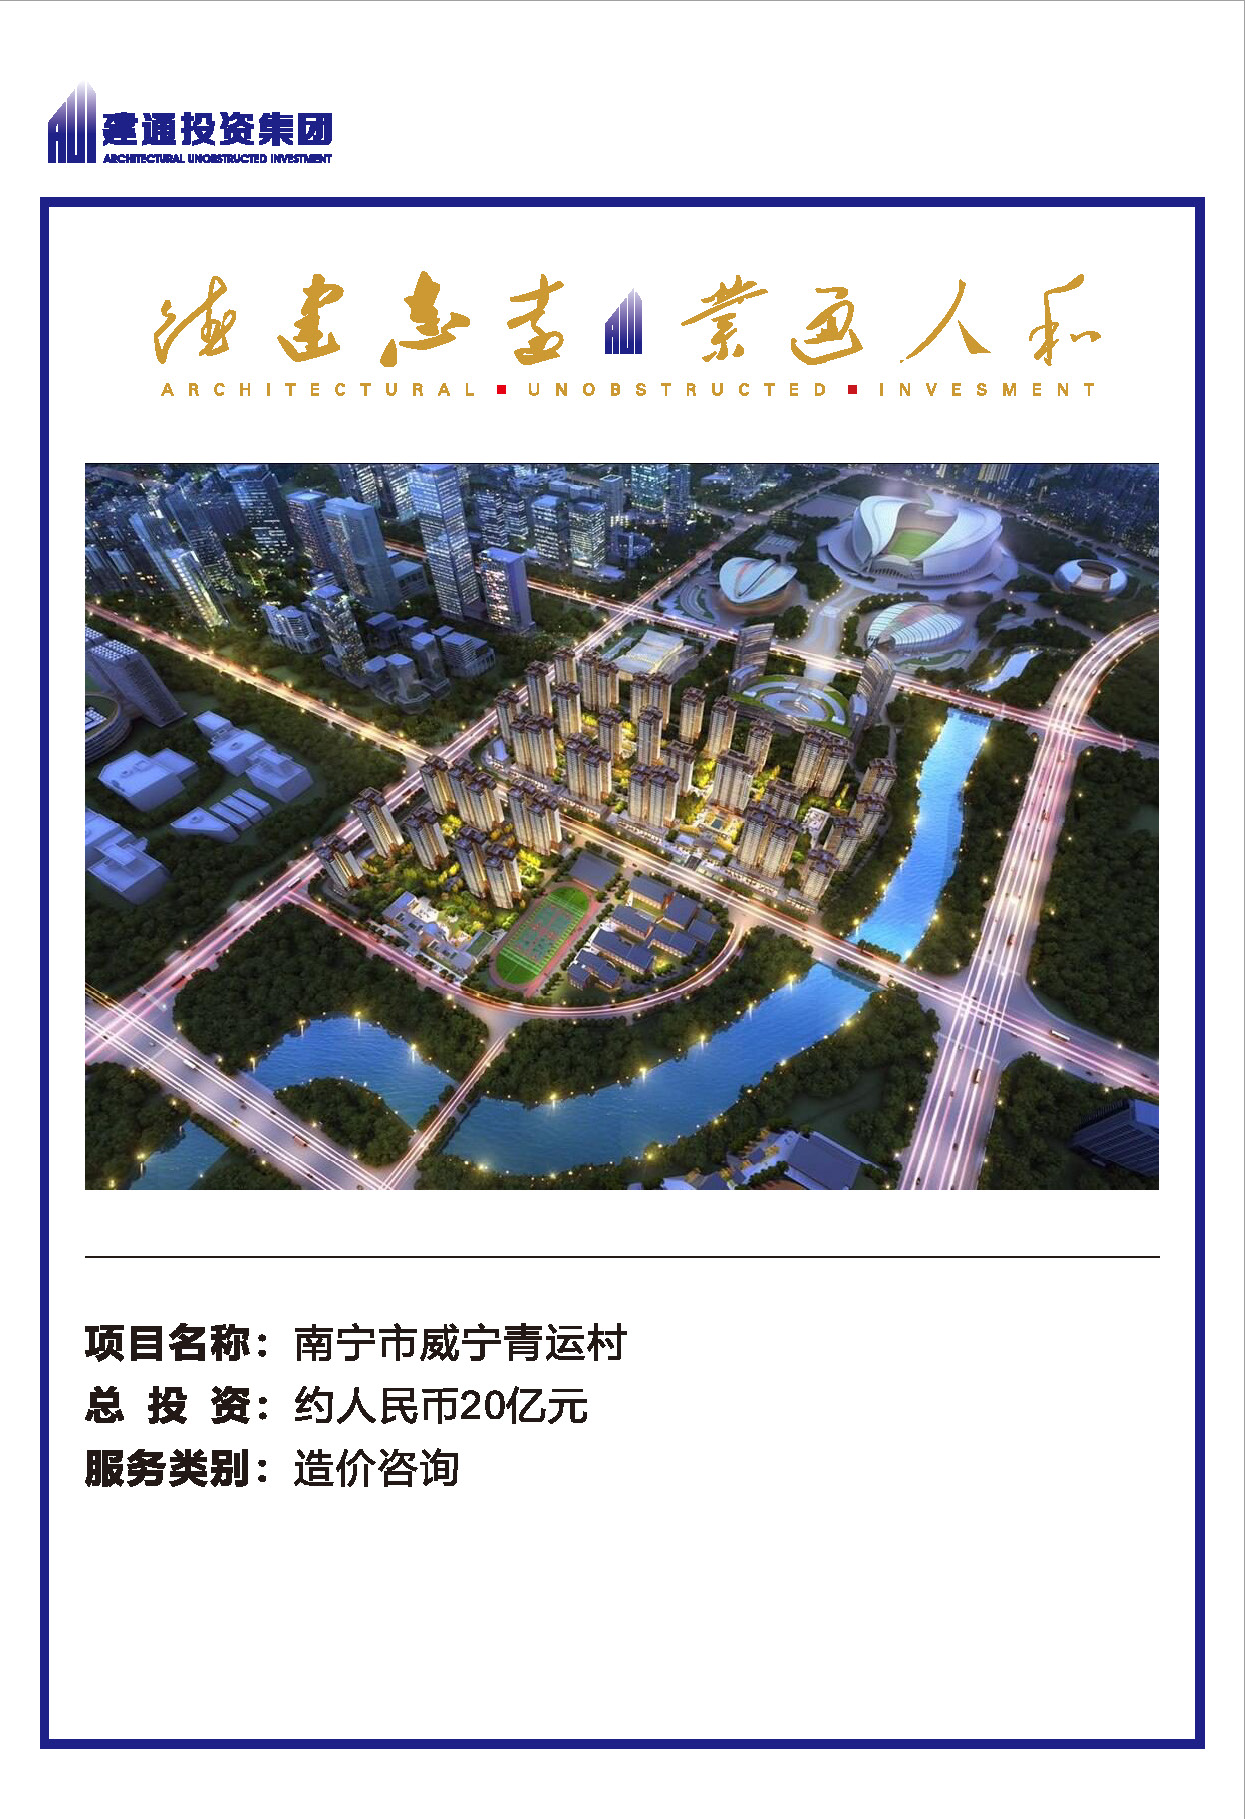 2022年【九州体育】(中国)股份有限公司官网项目摘录_页面_11.jpg